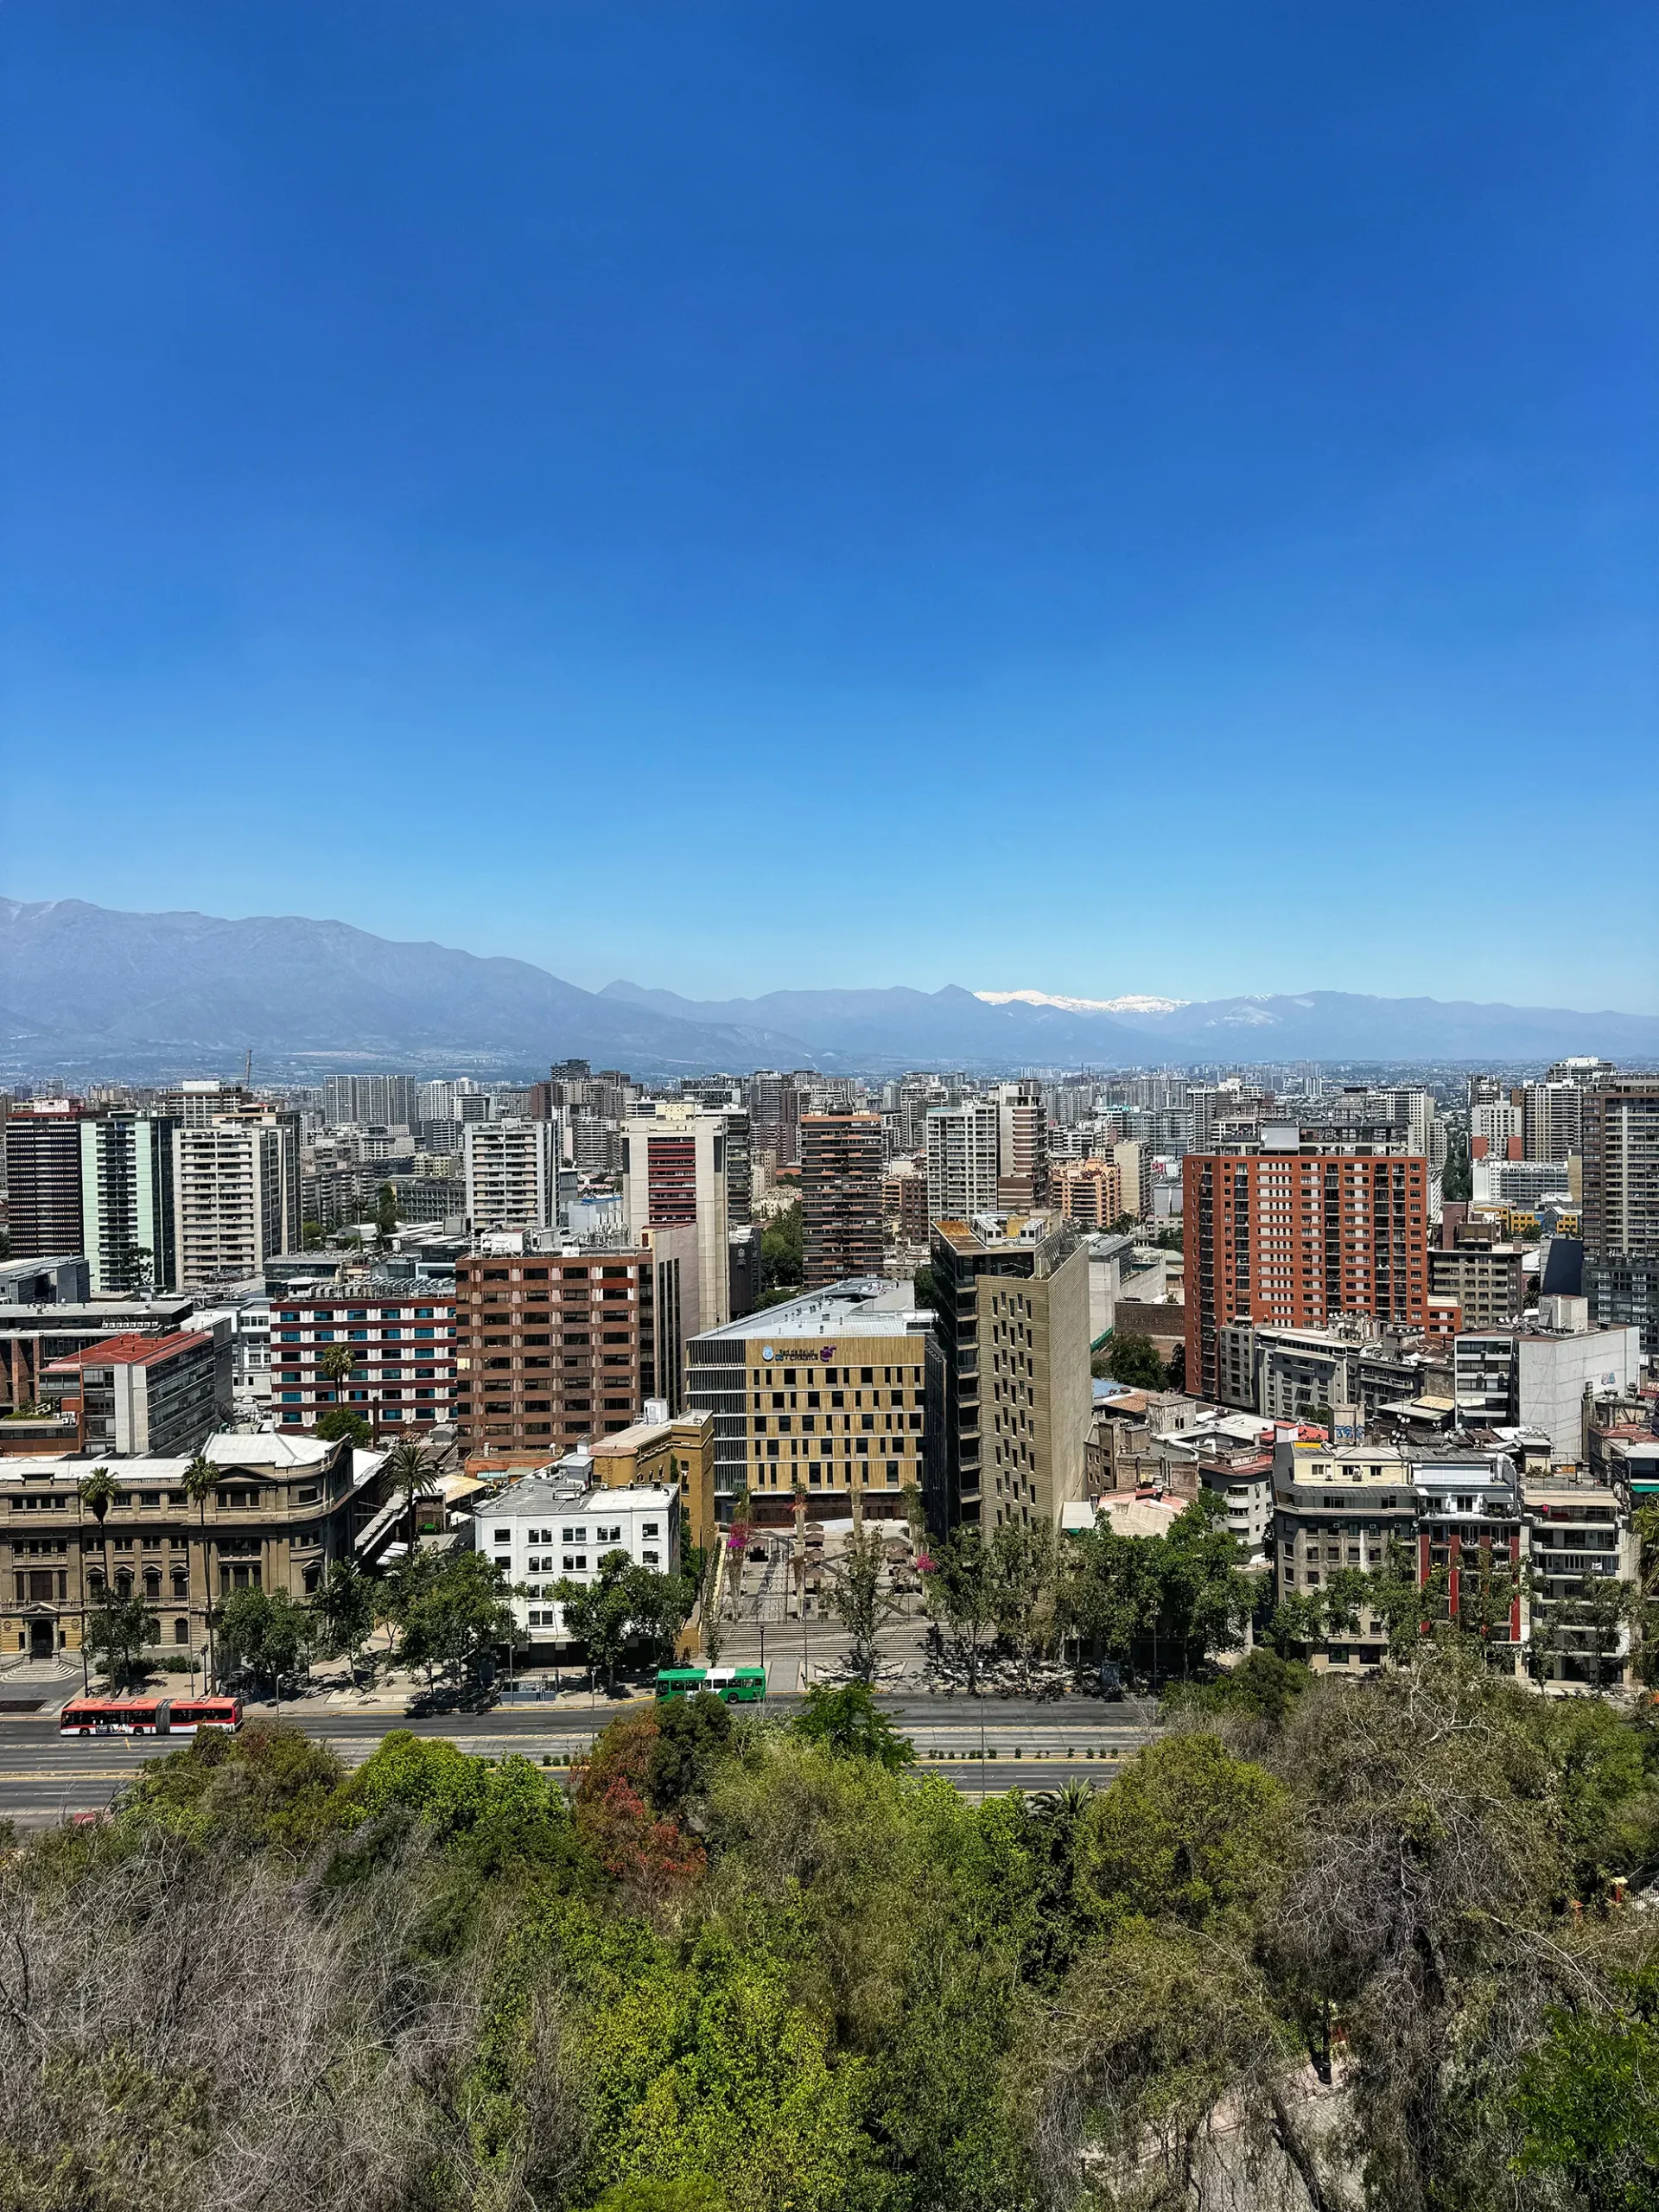 Carretera Austral, Chili - Santiago de Chile